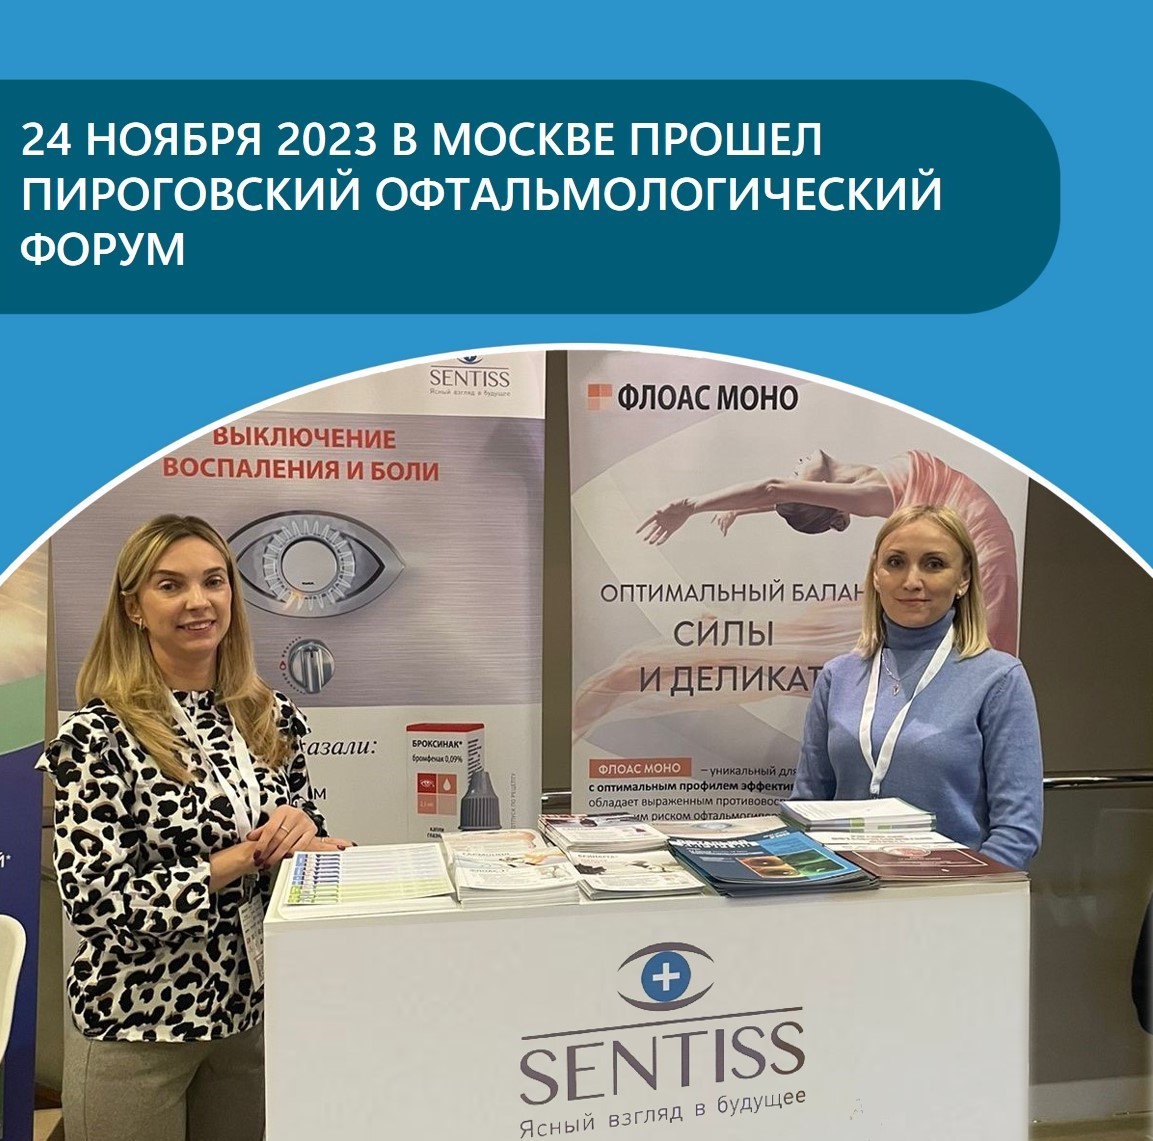 V Пироговский Офтальмологический Форум состоялся 24 ноября в Москве